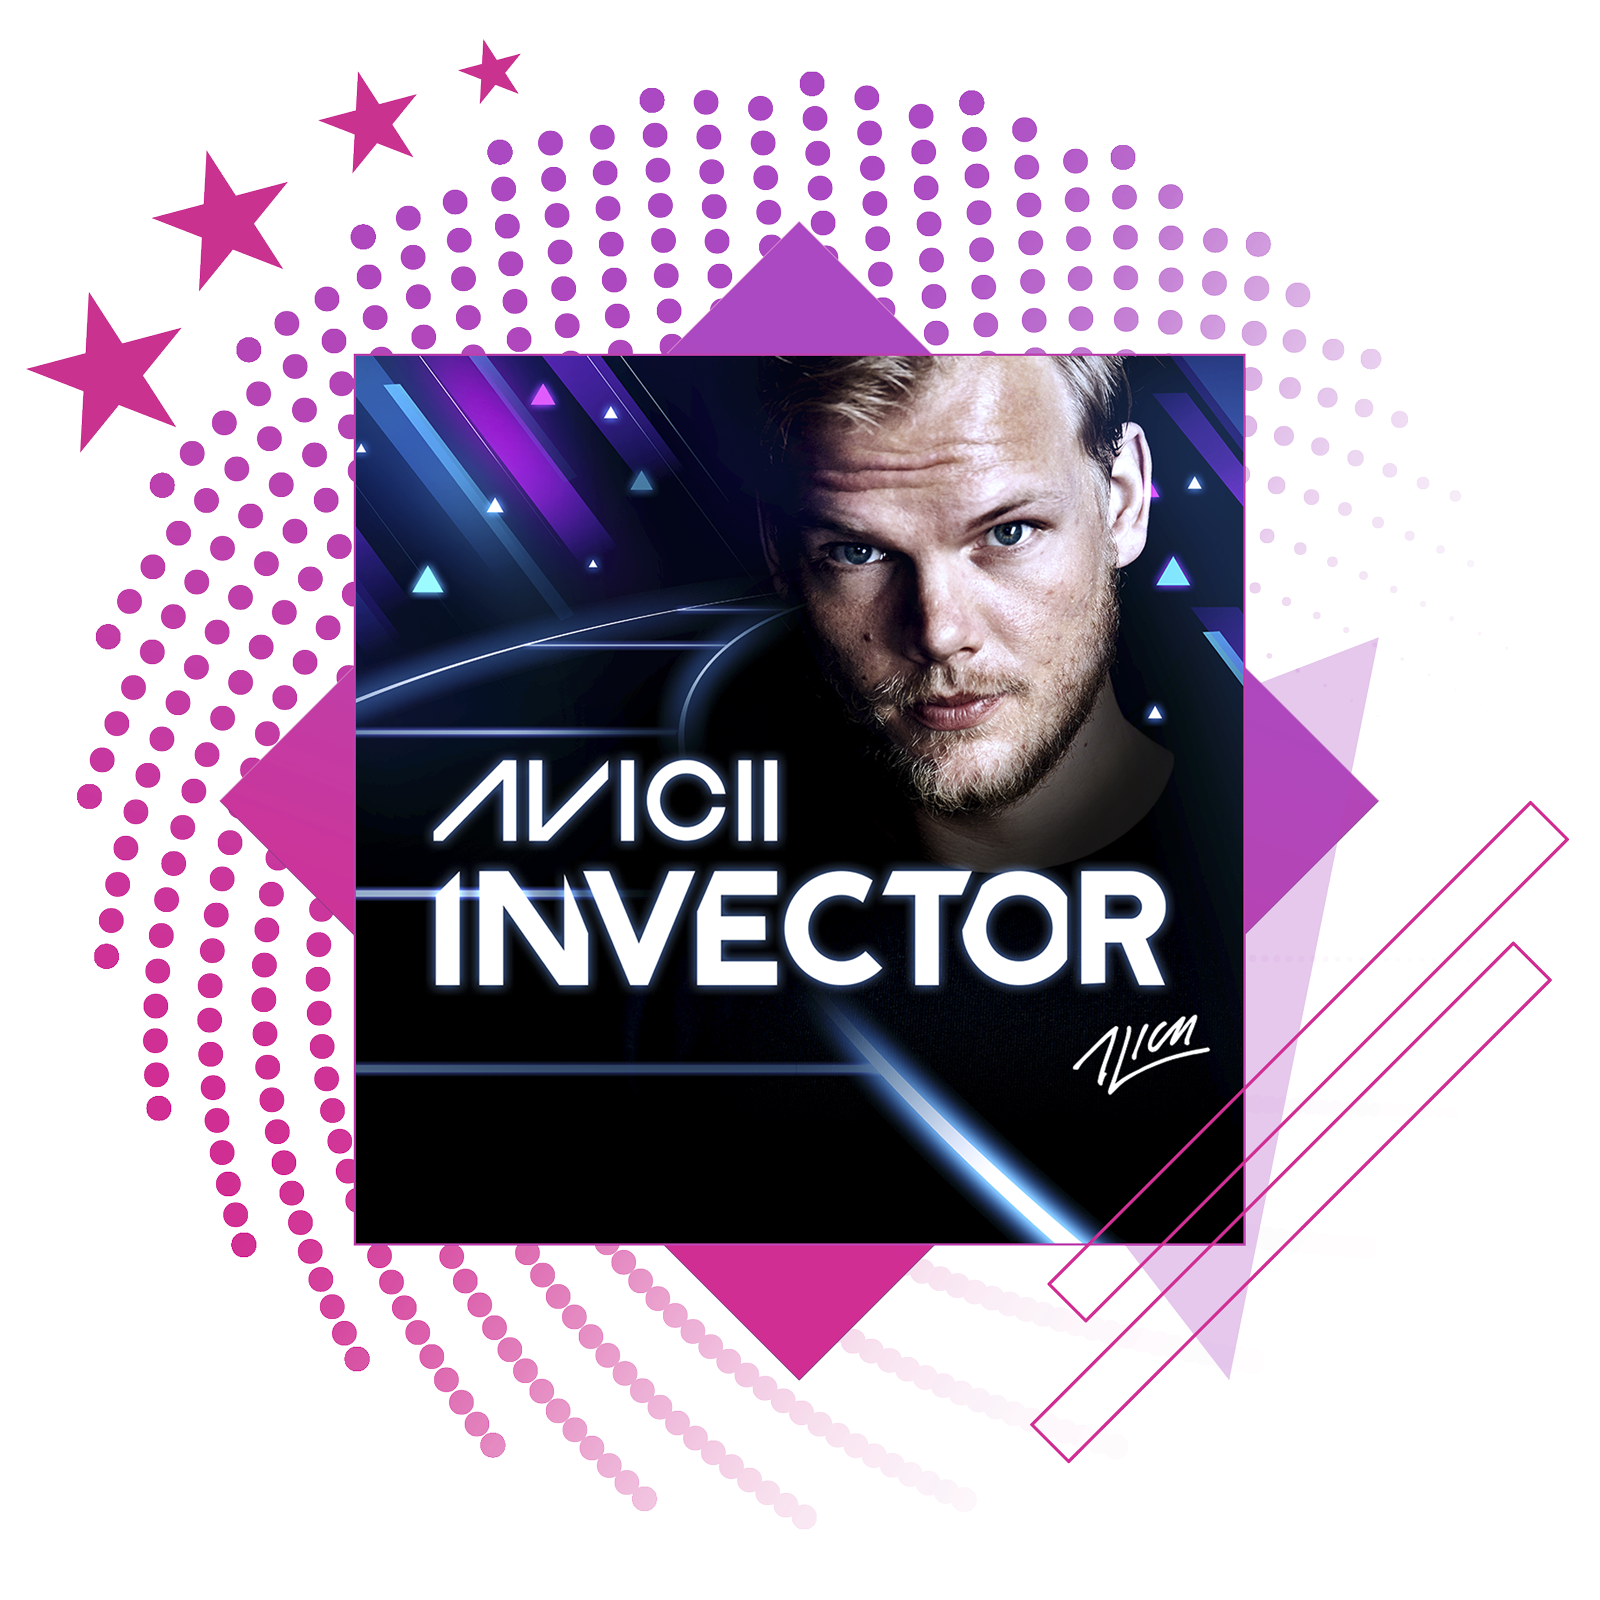 最佳节奏游戏的特色图像，展示《Aviici:Invector》的主题宣传海报。